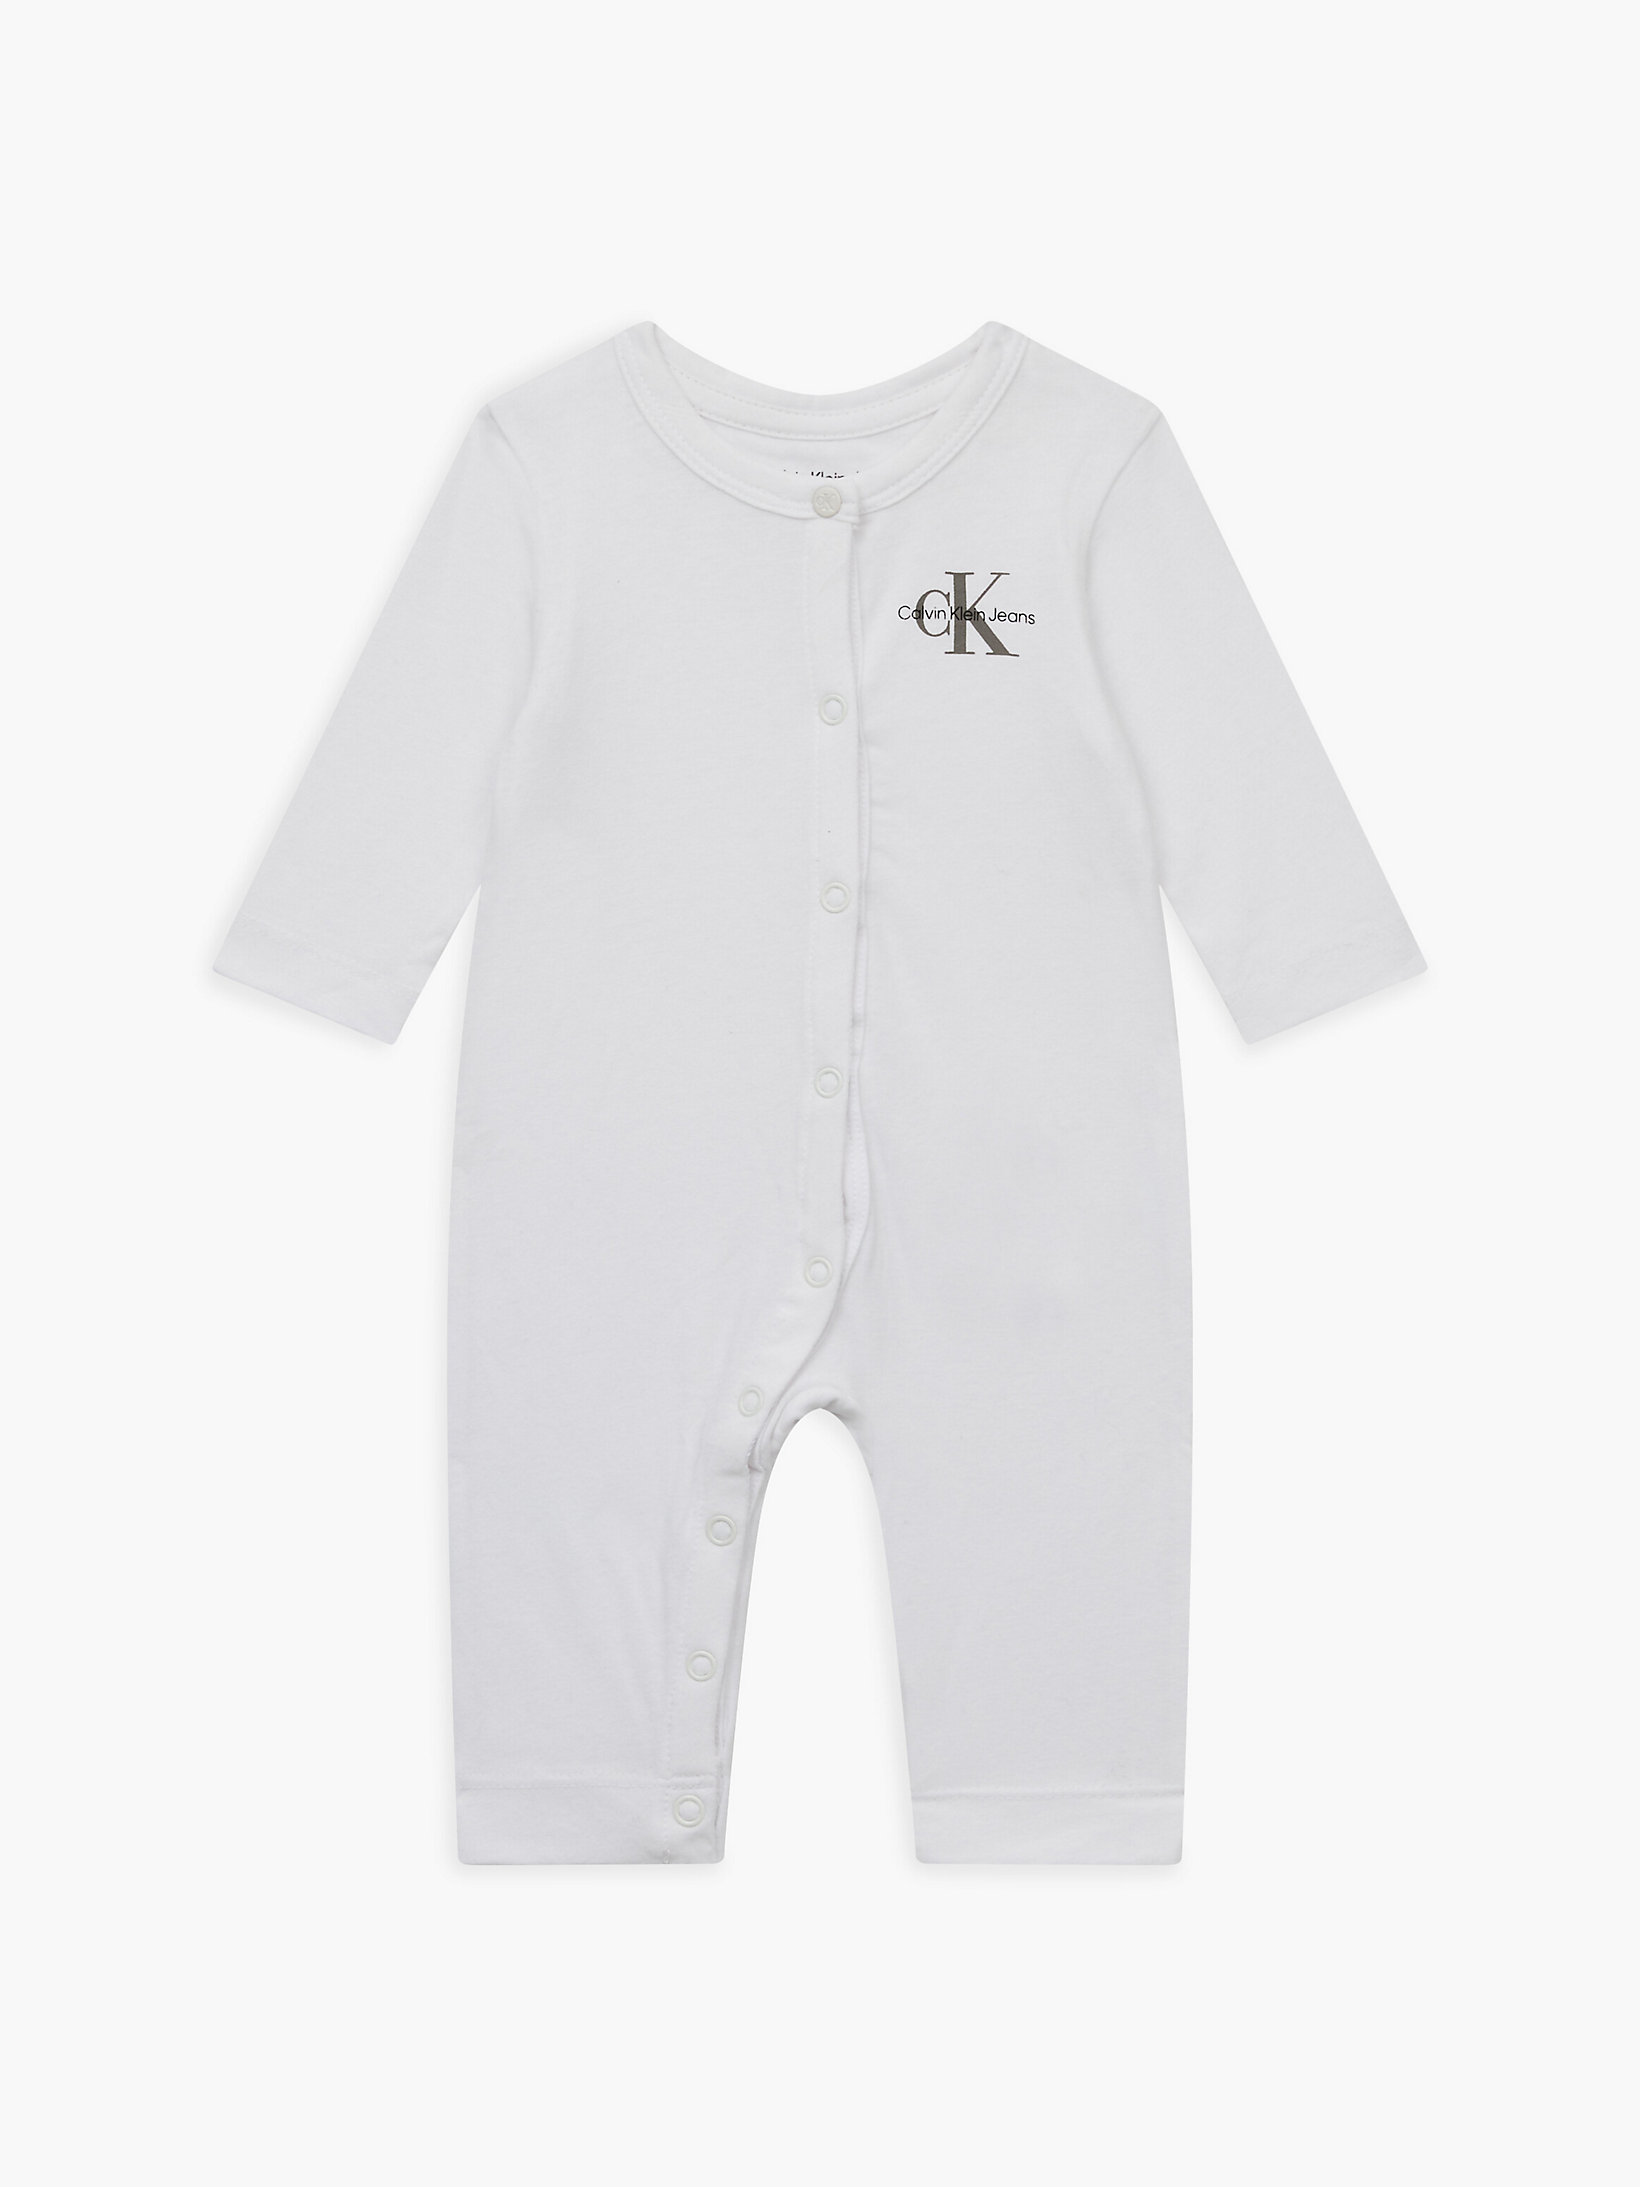 Bright White > Ползунки для новорожденных > undefined newborn - Calvin Klein